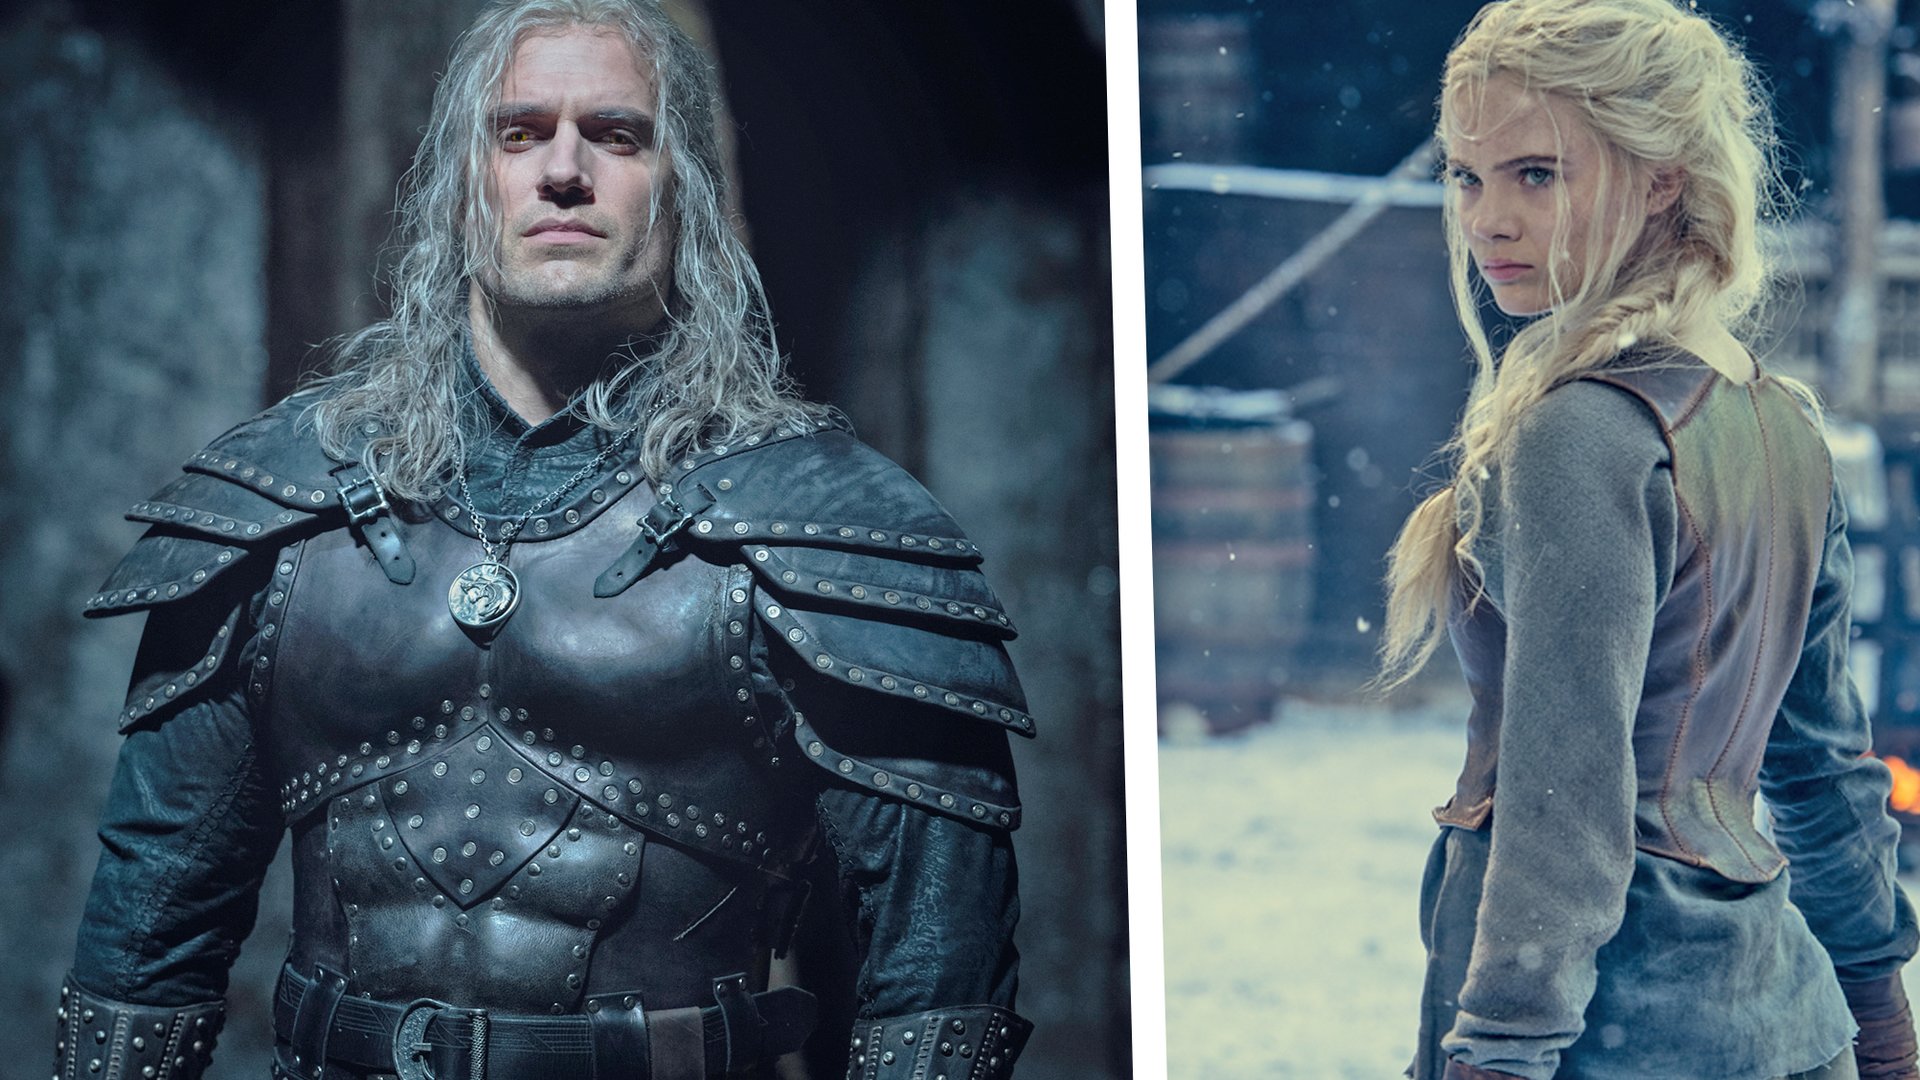 #„The Witcher“ Staffel 3: Start auf Netflix bekannt – So geht es für Geralt und Ciri weiter